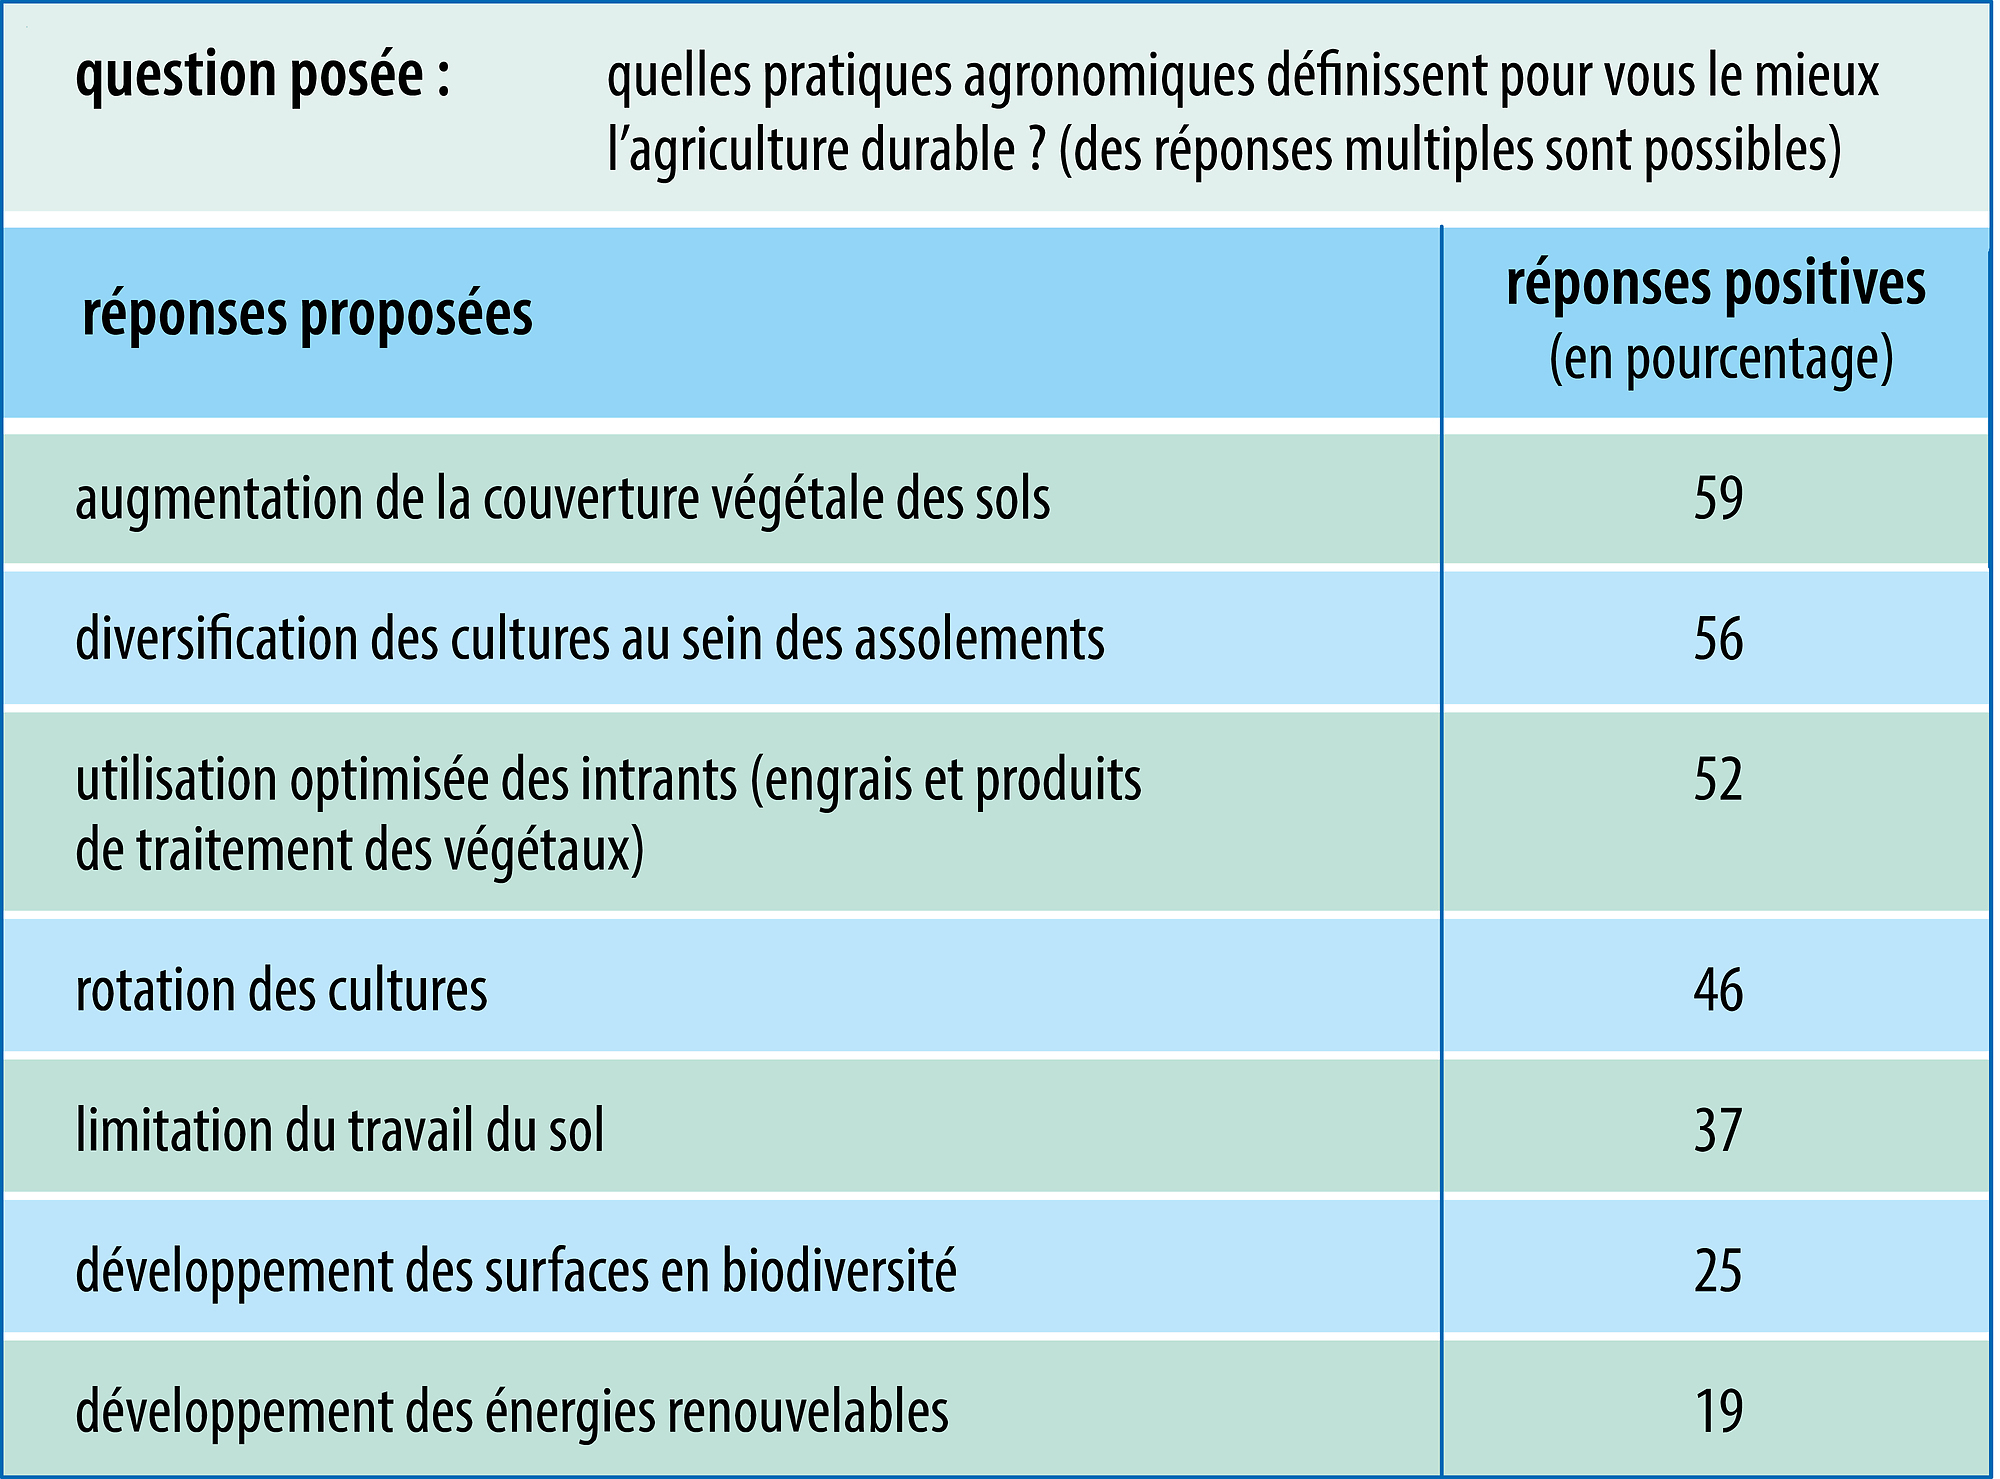 Pratiques privilégiées en agriculture durable - crédits : Encyclopædia Universalis France